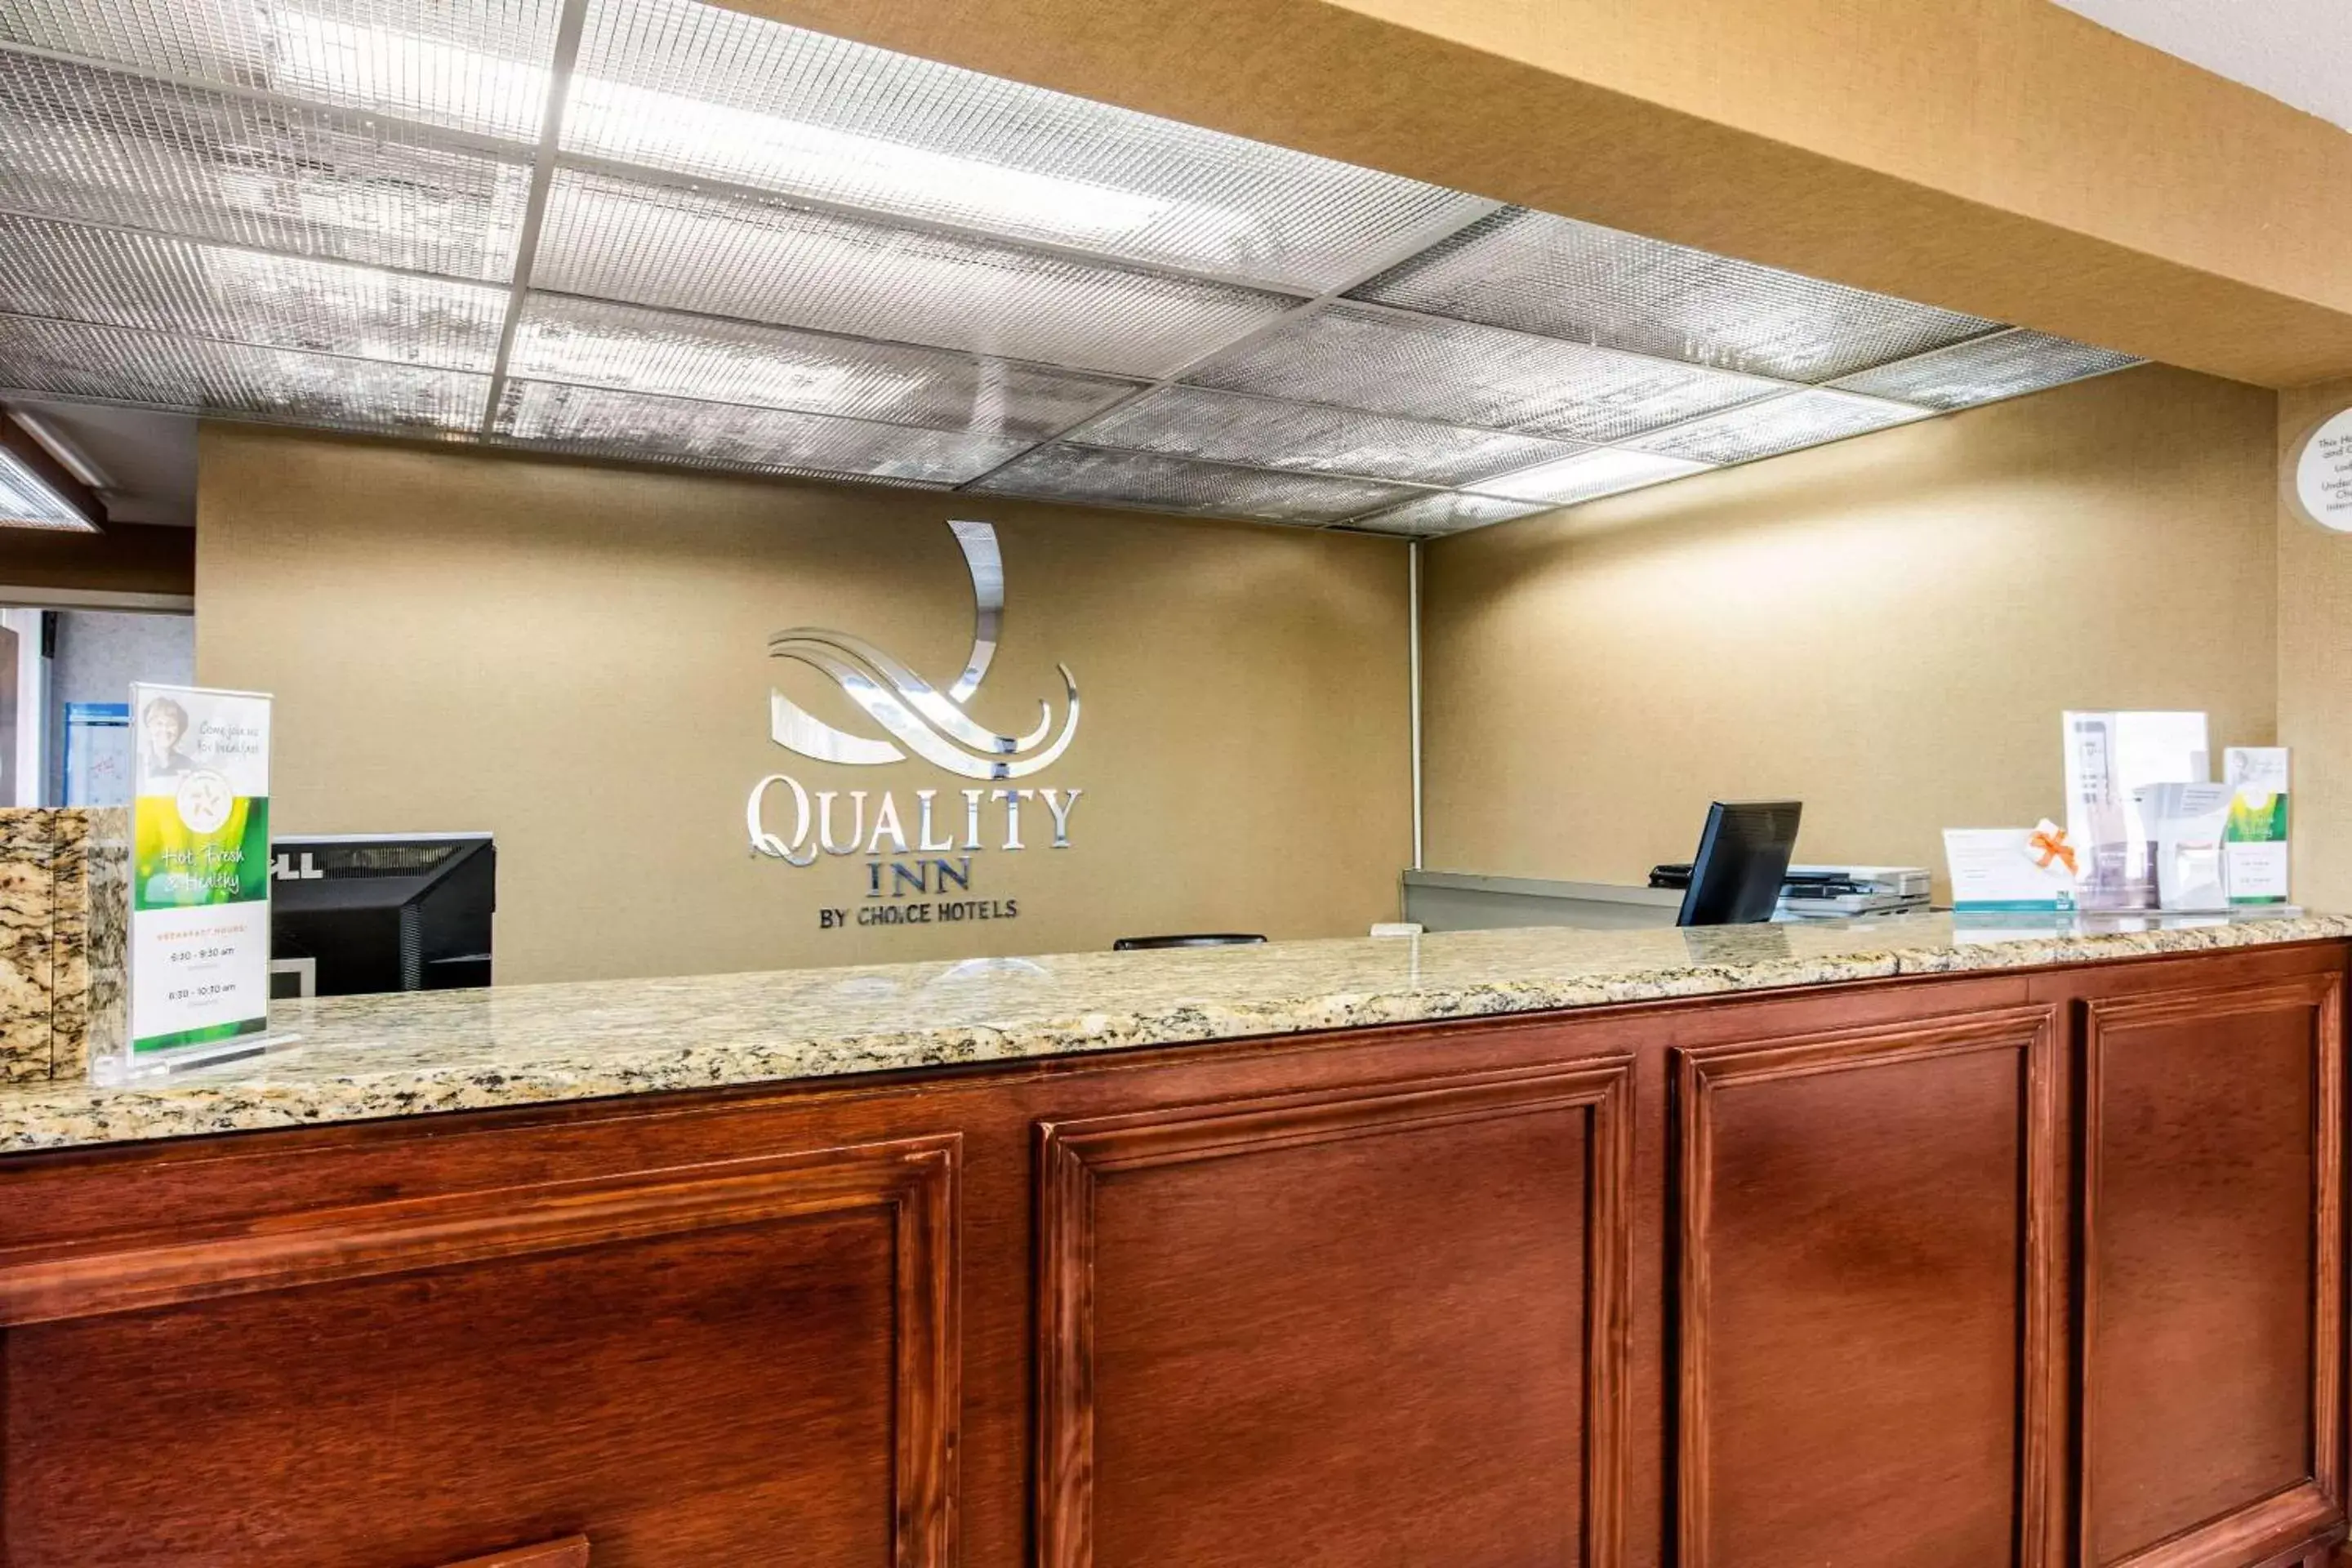 Lobby or reception, Lobby/Reception in Quality Inn Opryland Area